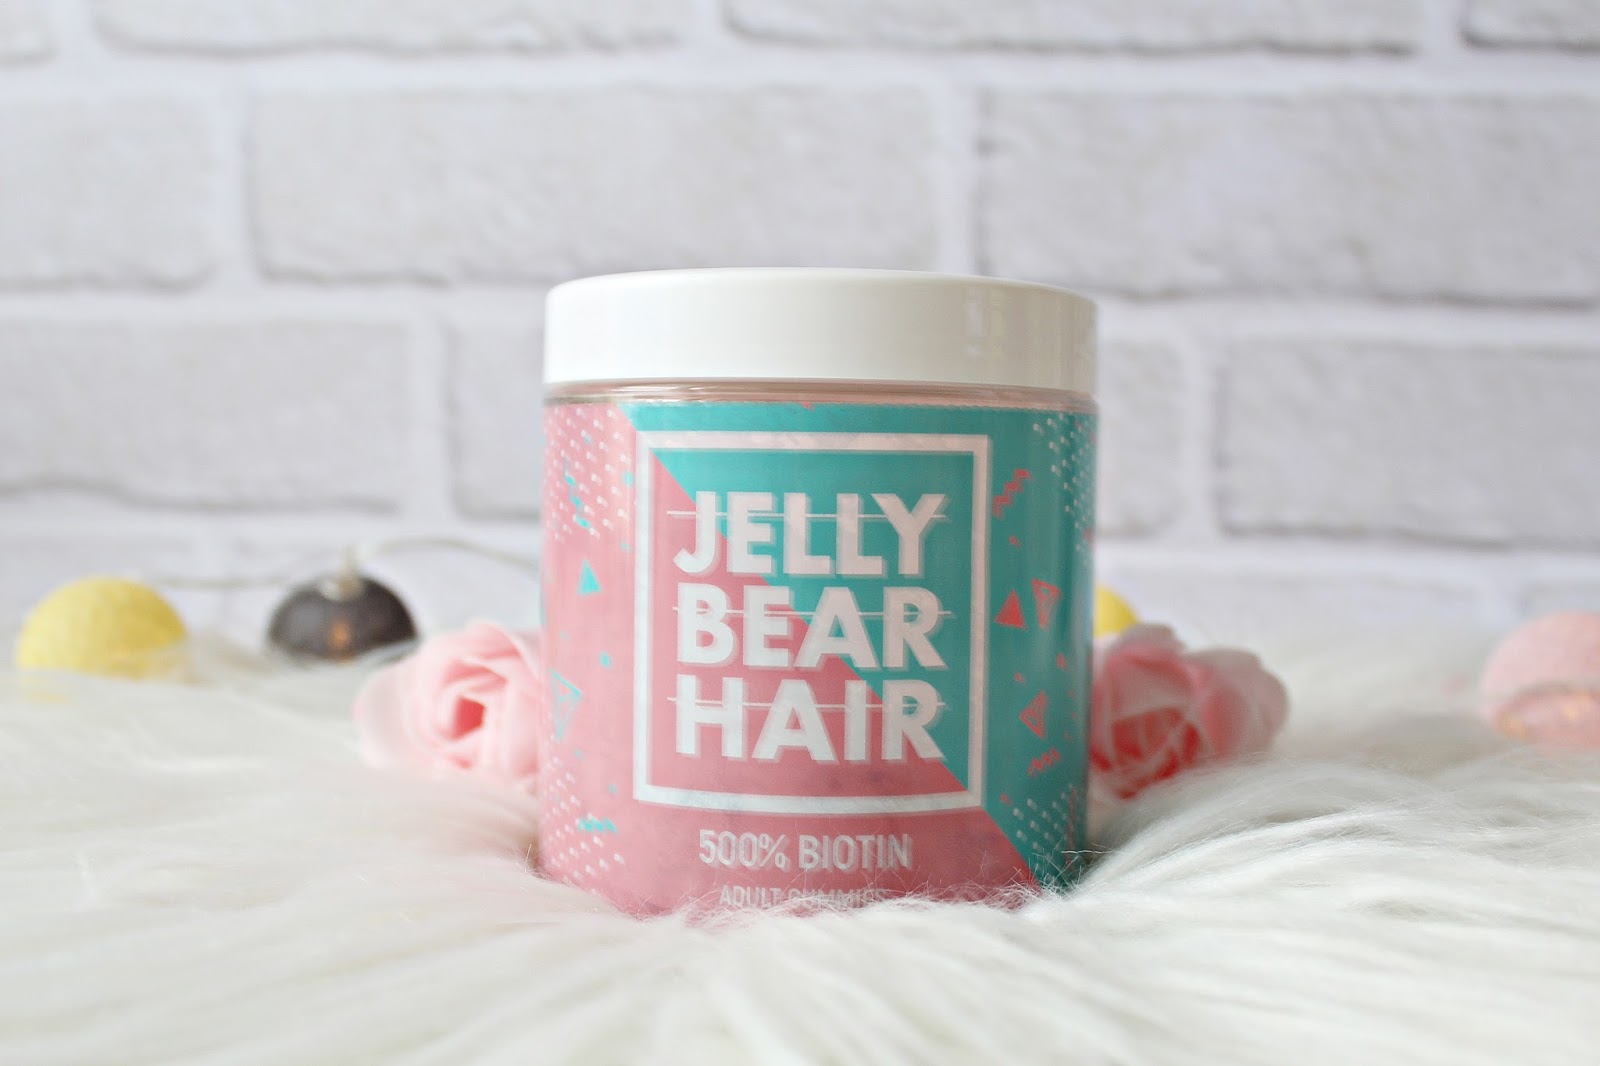 JELLY BEAR HAIR - witaminy na włosy w żelkach! | Zuzka Pisze